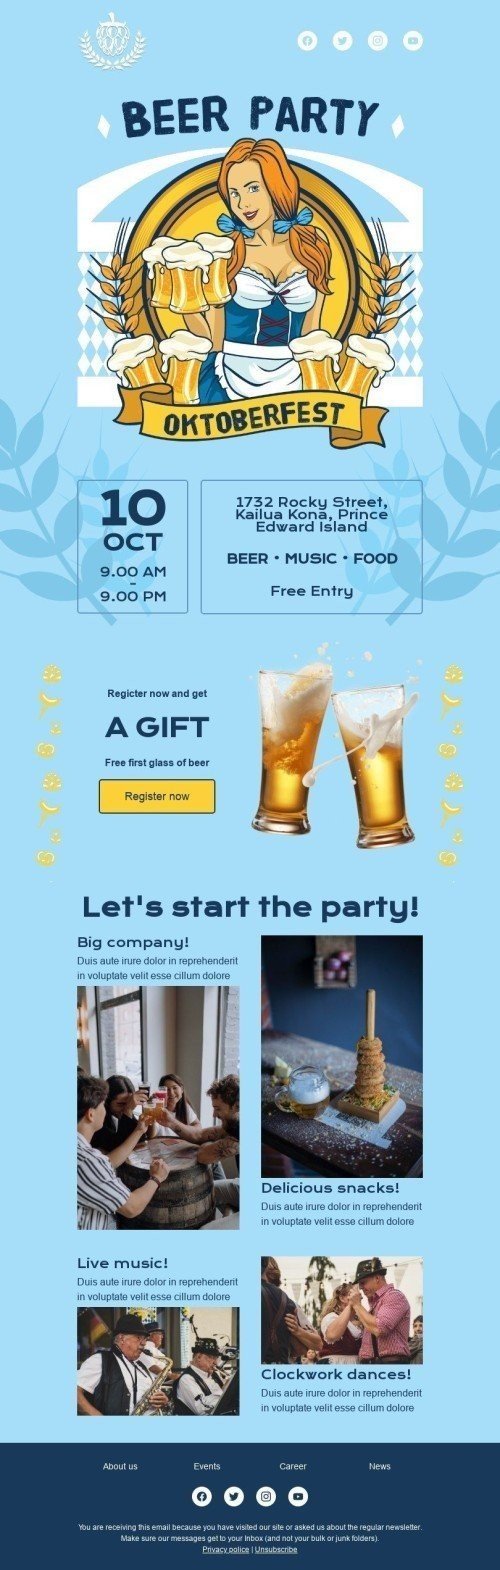 Plantilla de correo electrónico «Fiesta de la cerveza» de Oktoberfest para la industria de Hobbies Vista de escritorio